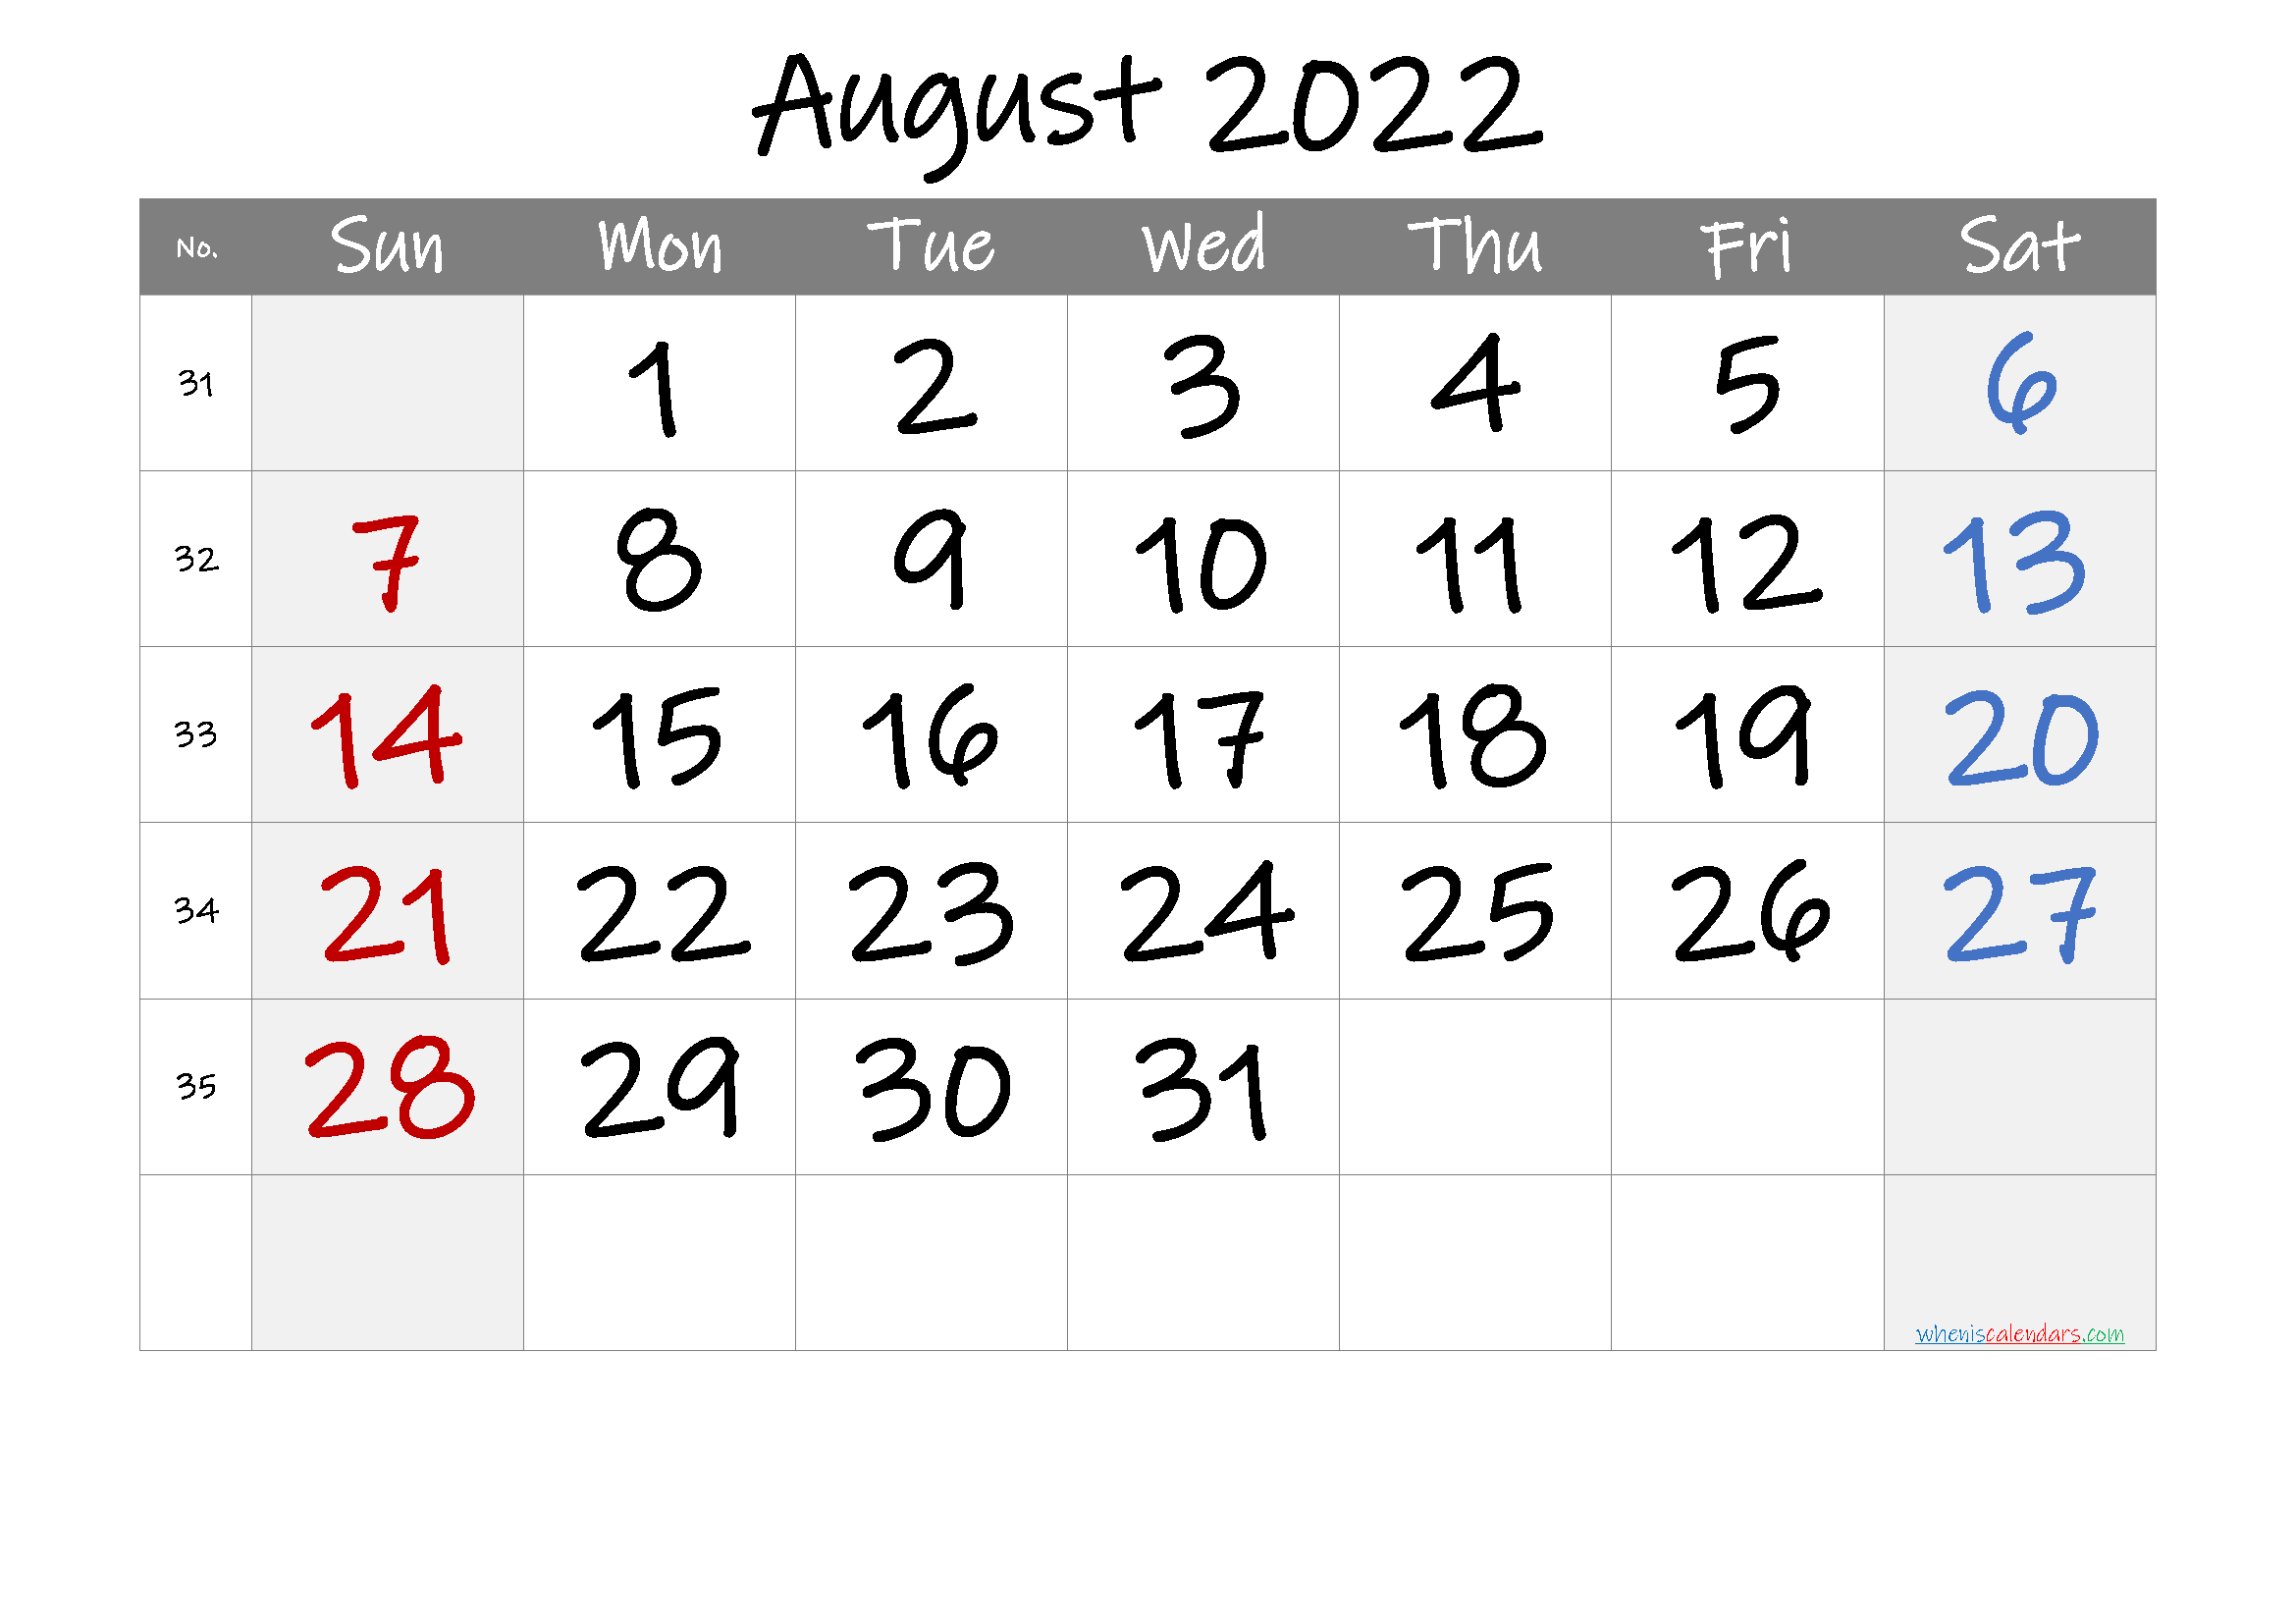 August 2022 Printable Calendar with Week Numbers